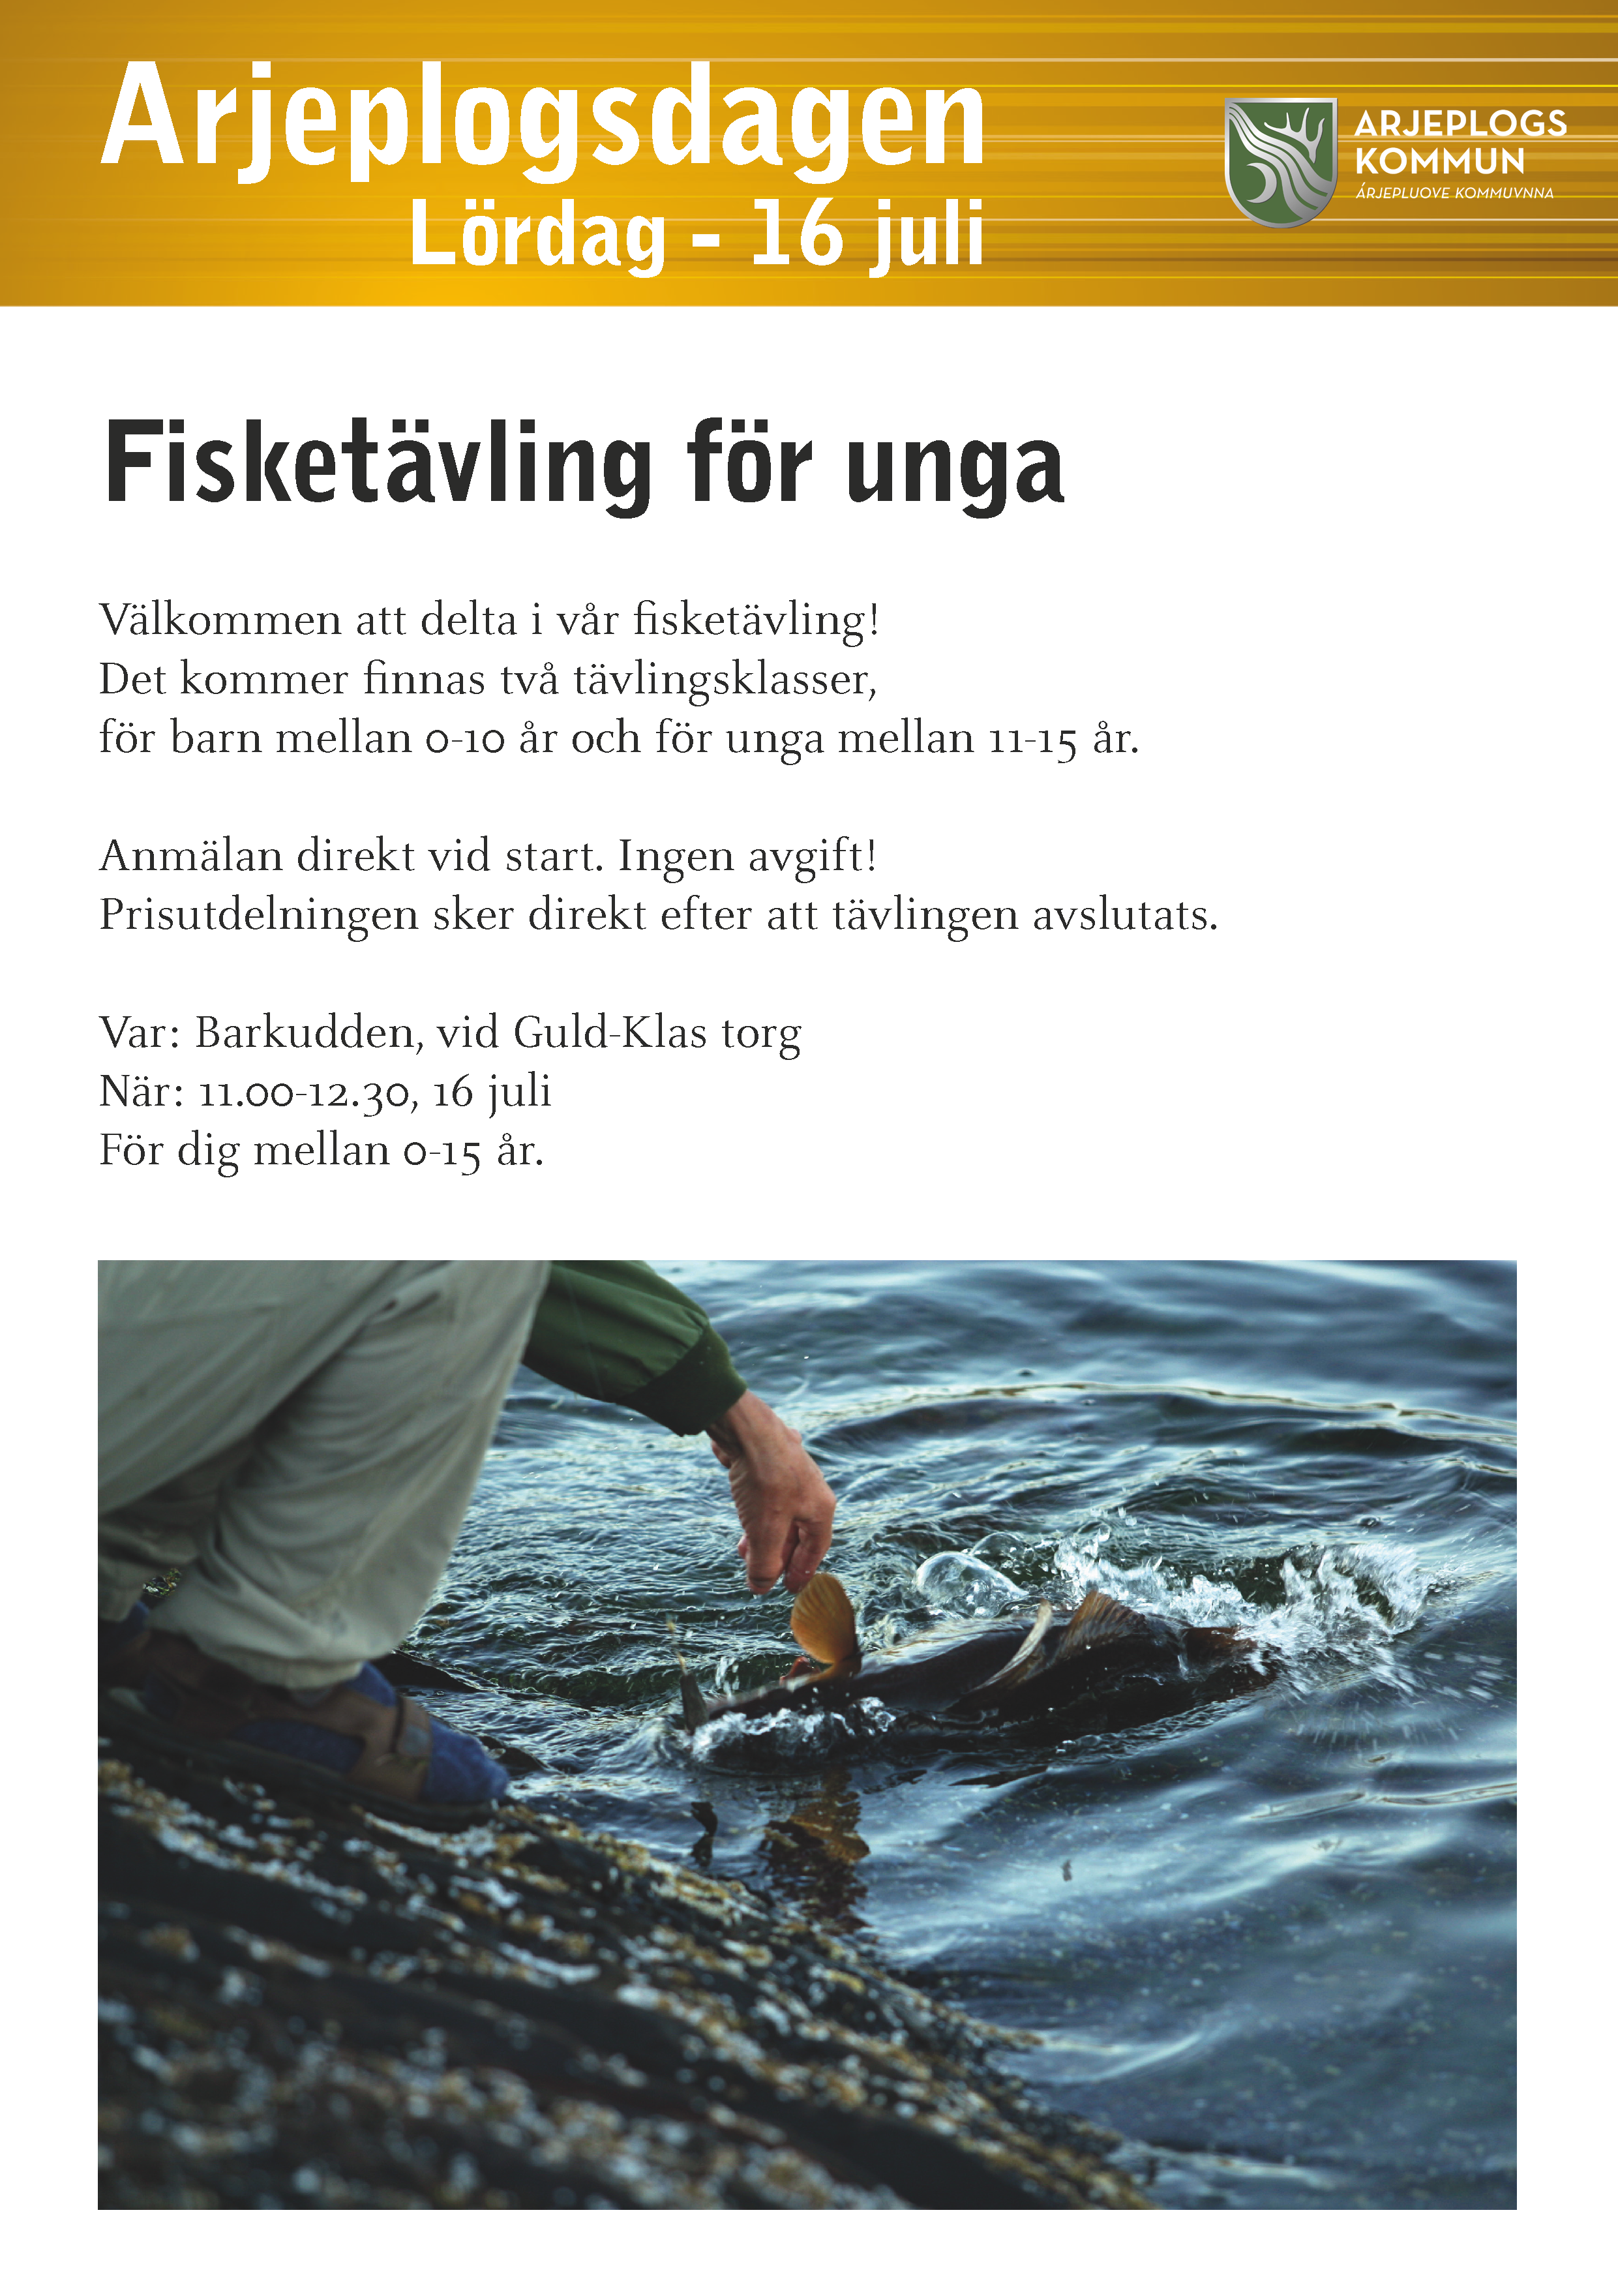 Affisch, fiske. Samma information återfinns nedan i text. I affischen finns en bild på en fisk som släpps ut i vattnet.